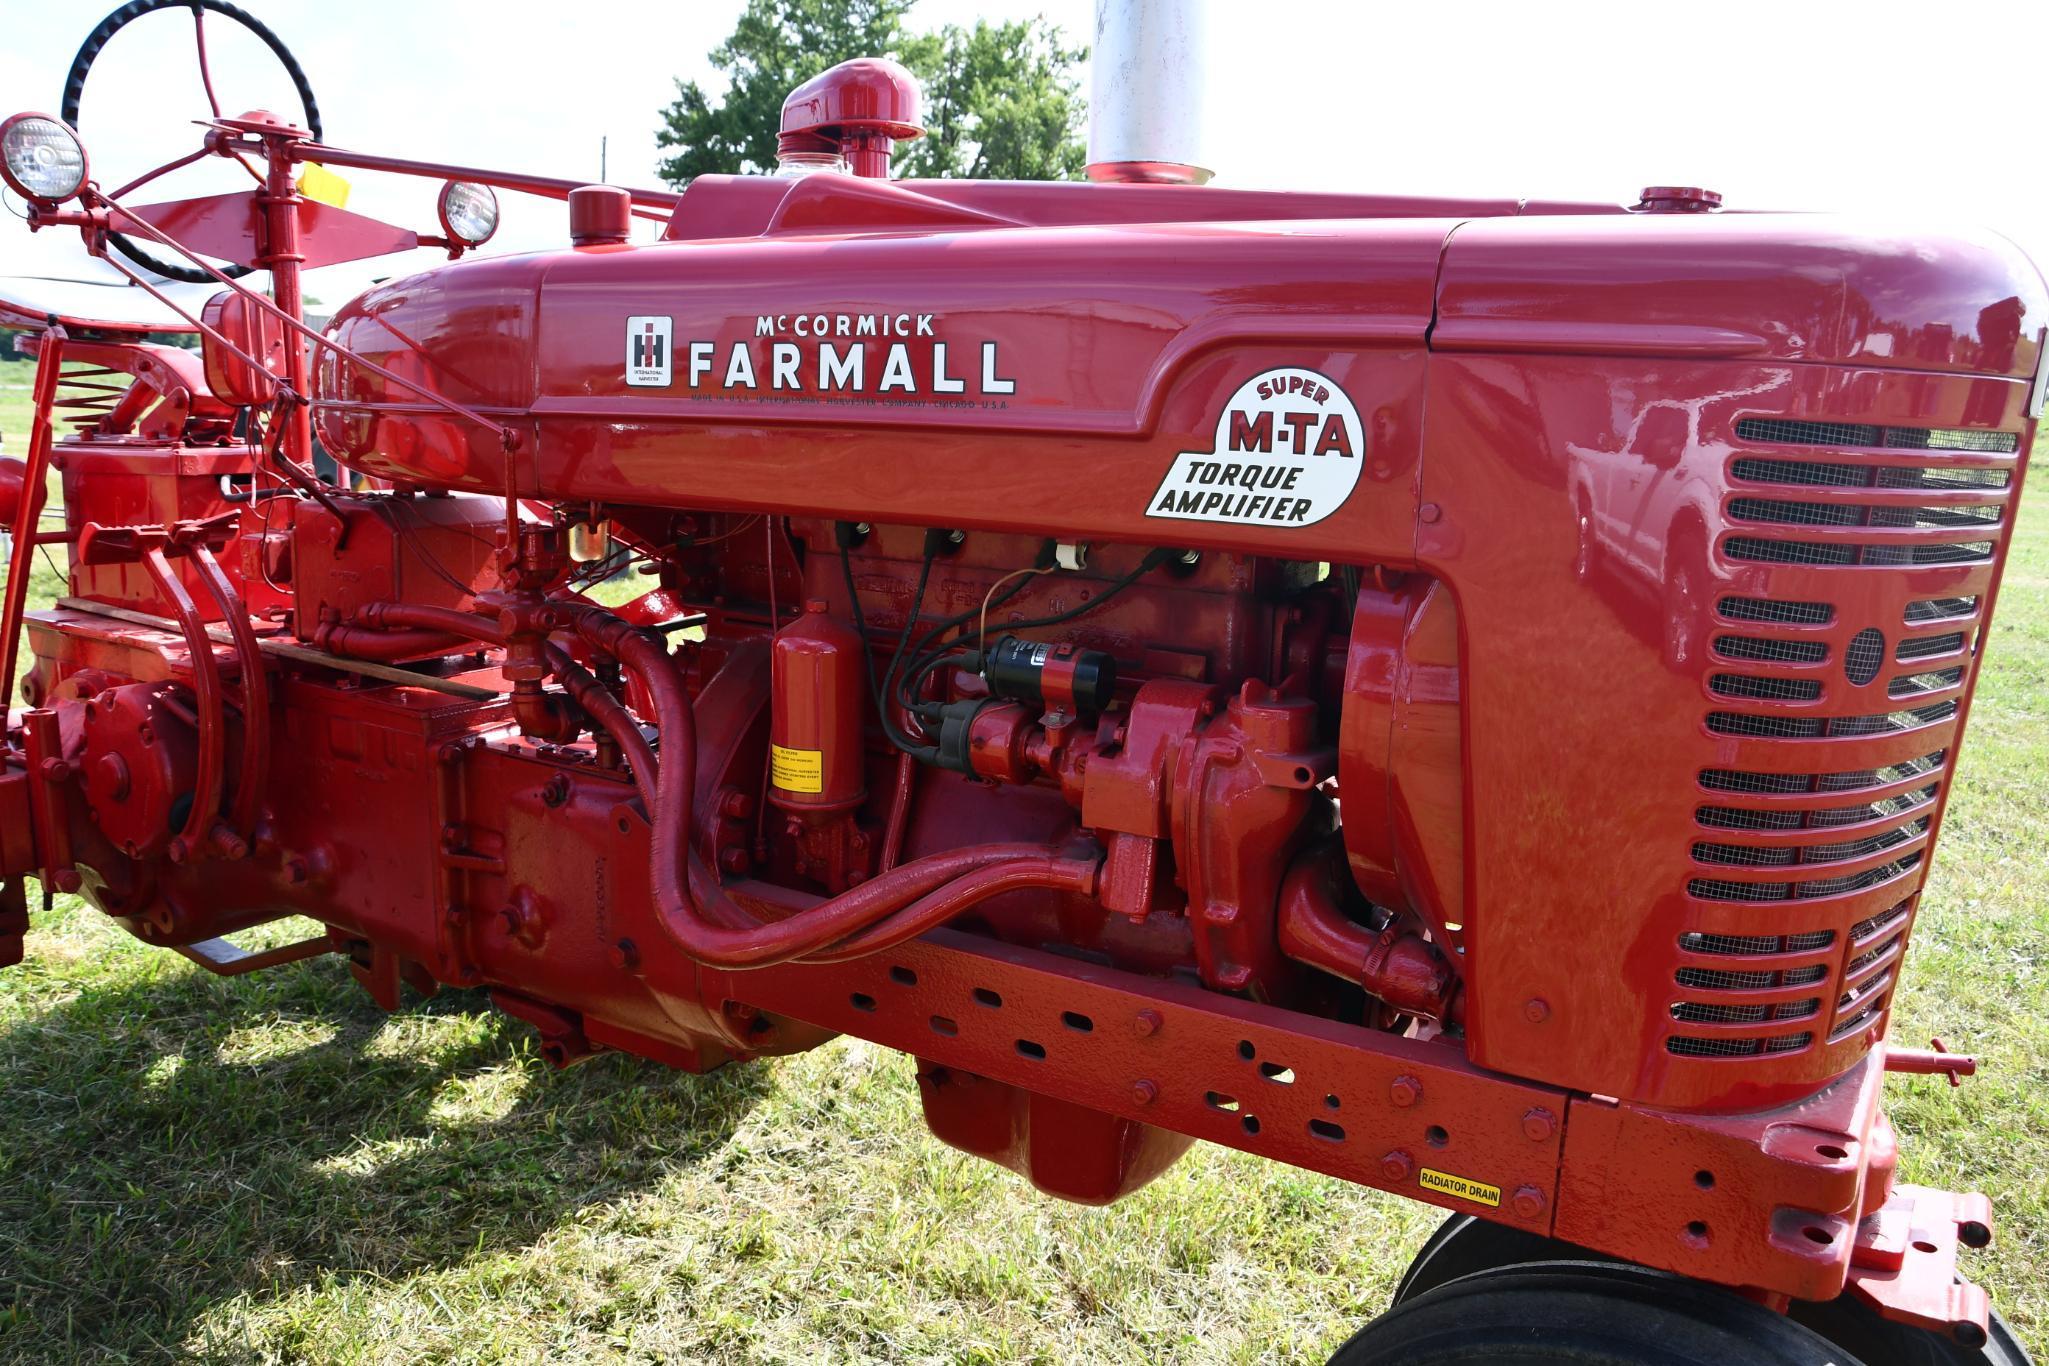 Farmall Super M-TA 2wd tractor